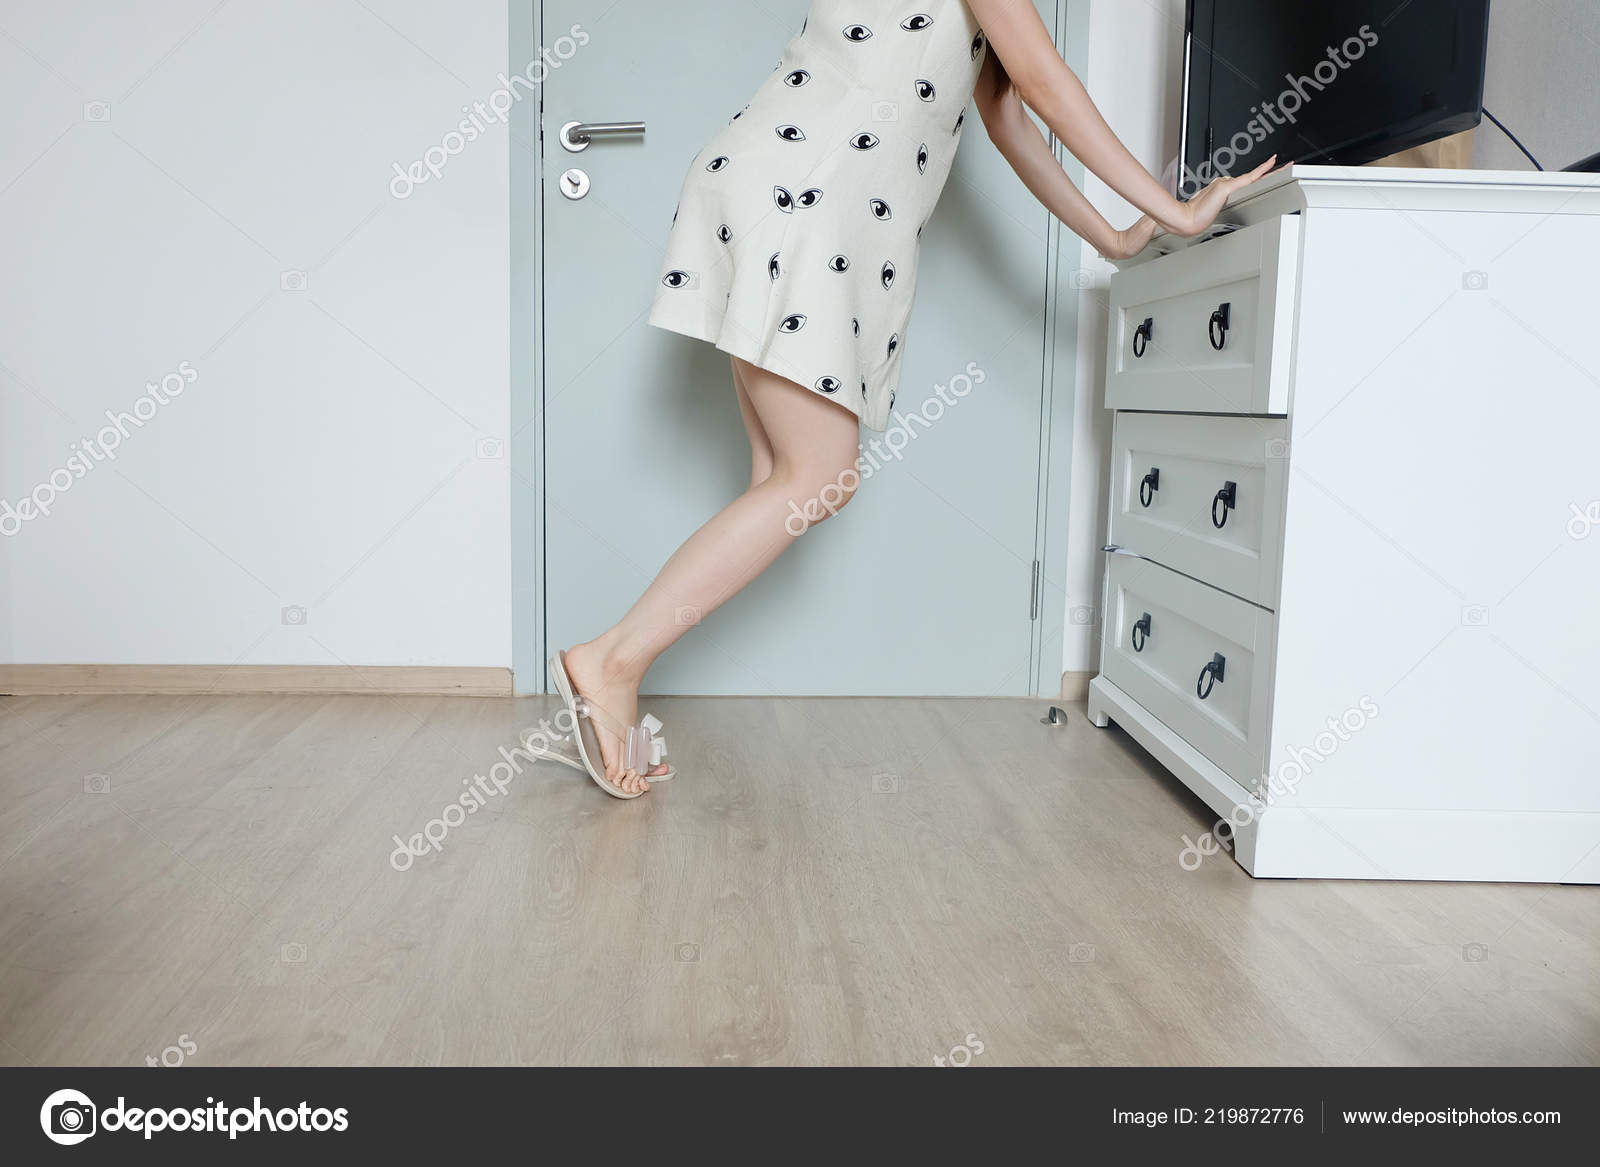 Long legs nude women standing